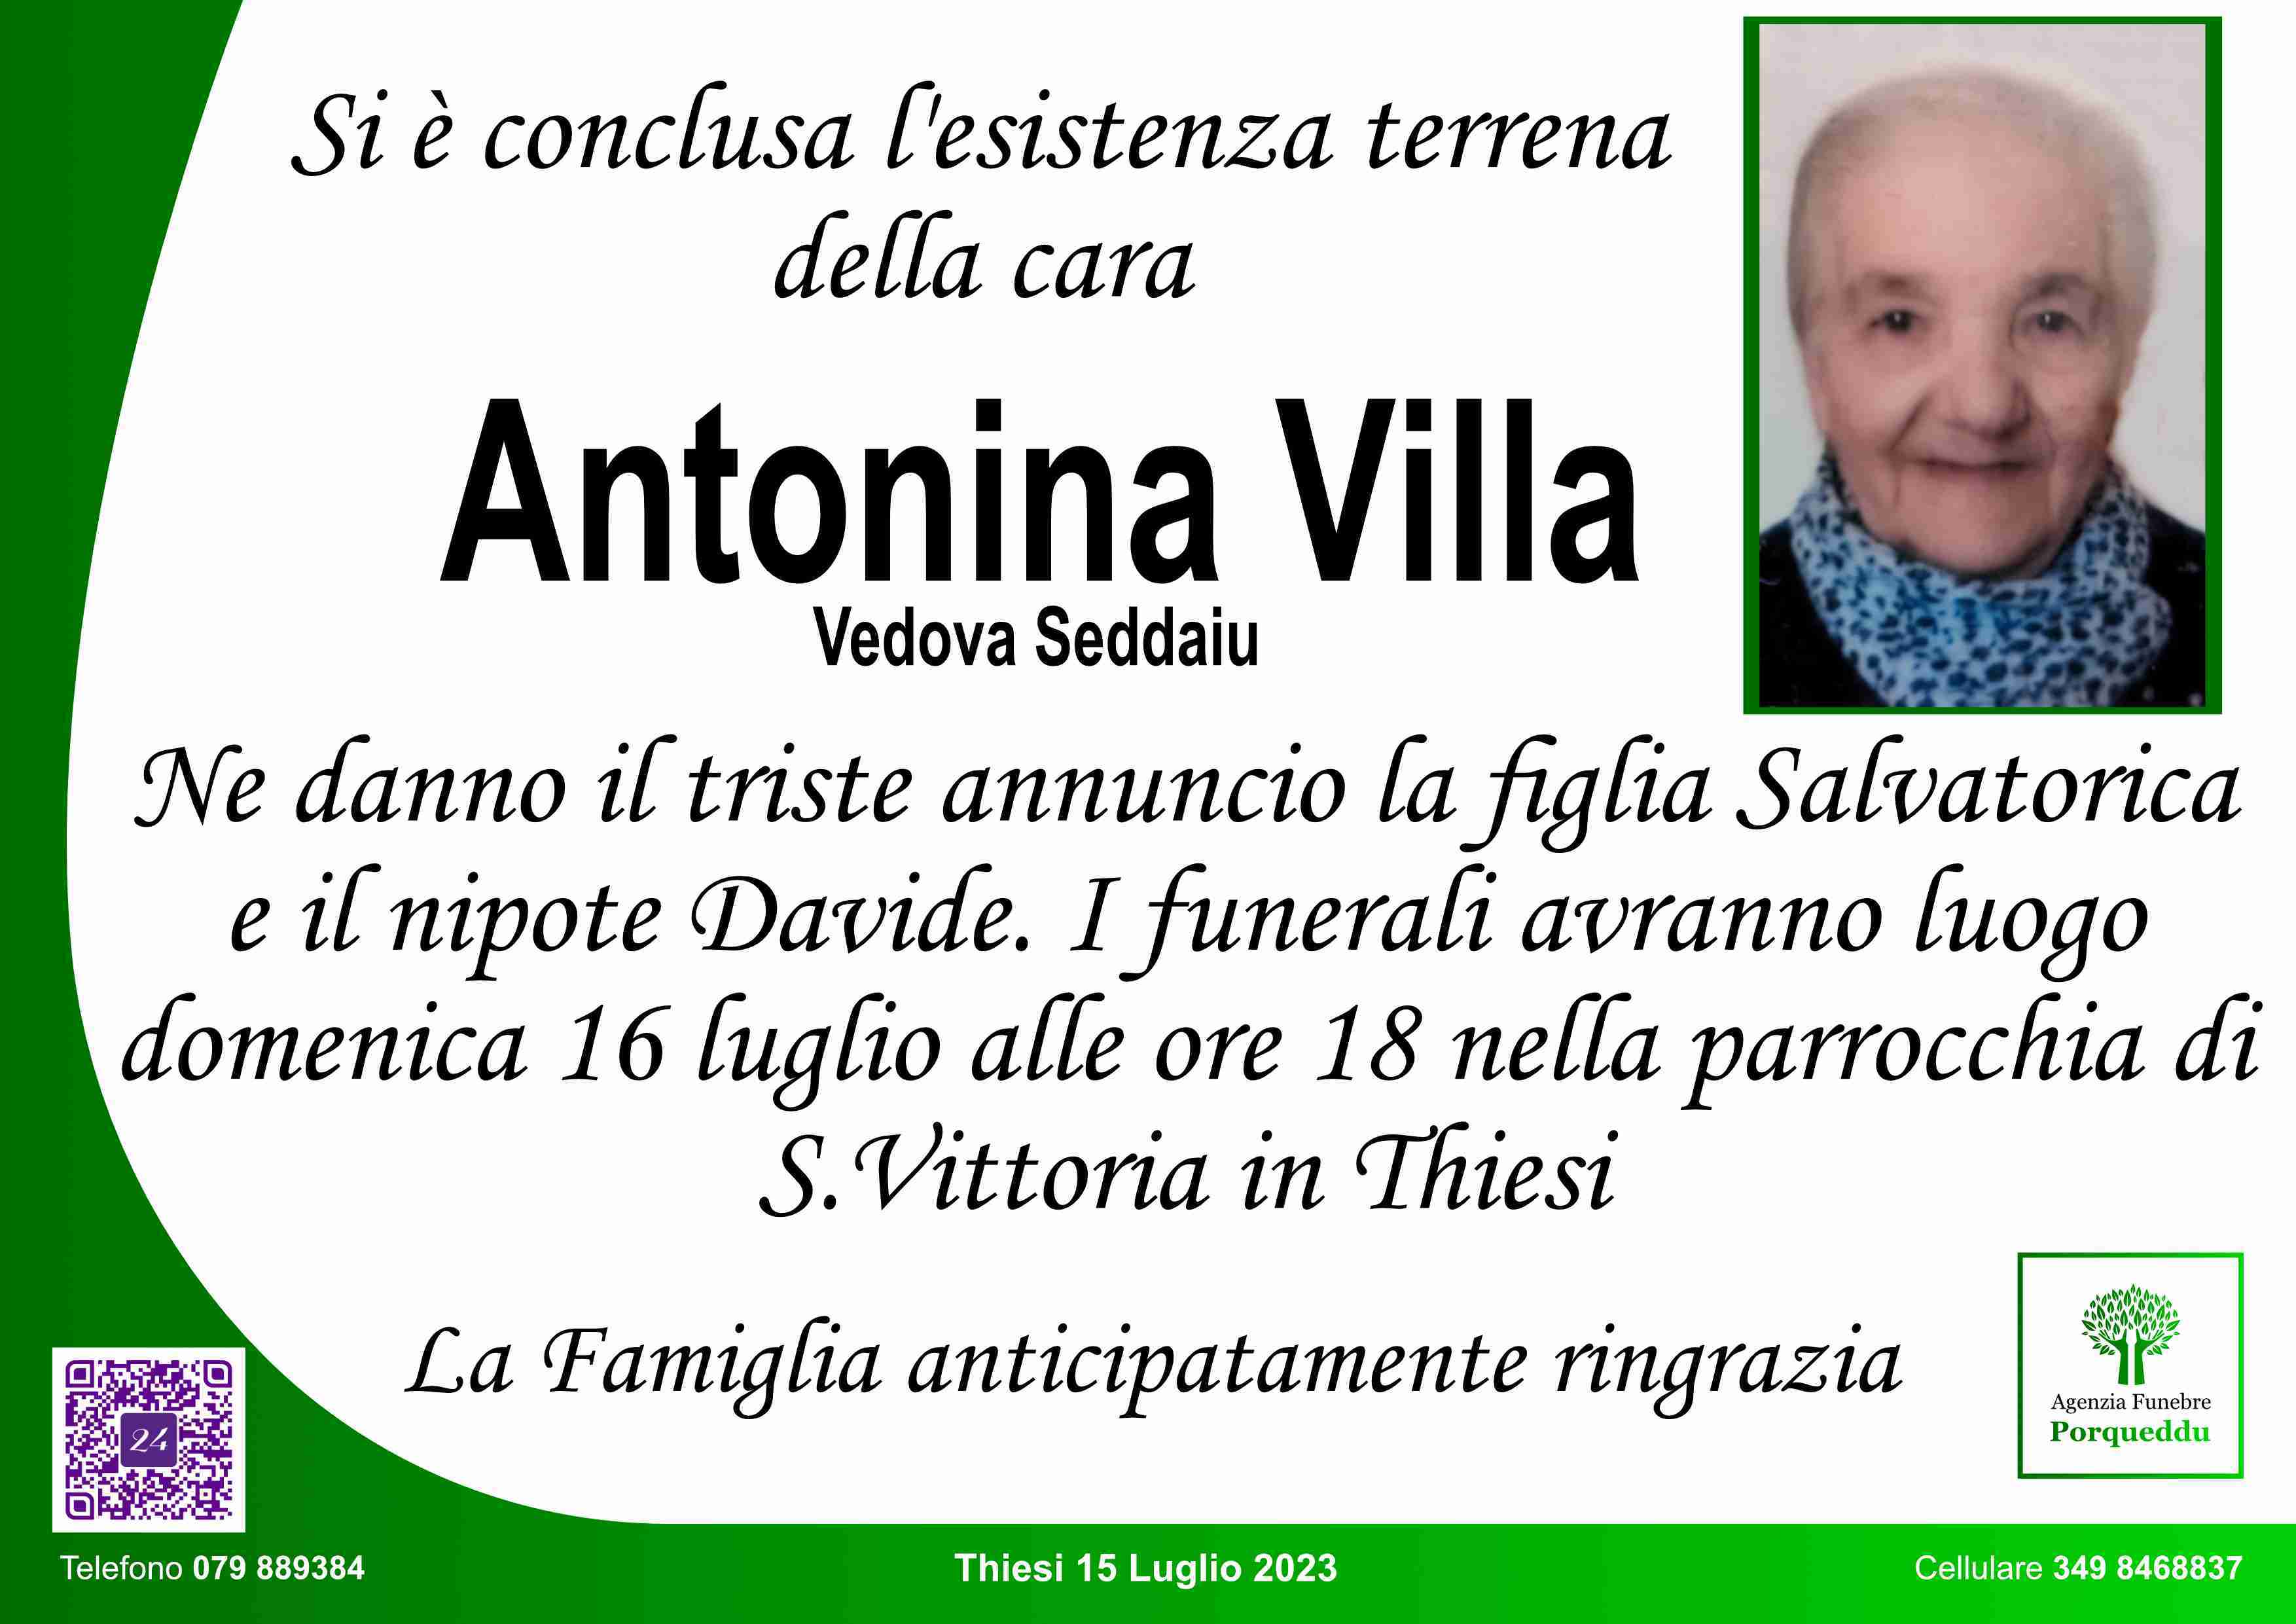 Antonina Villa